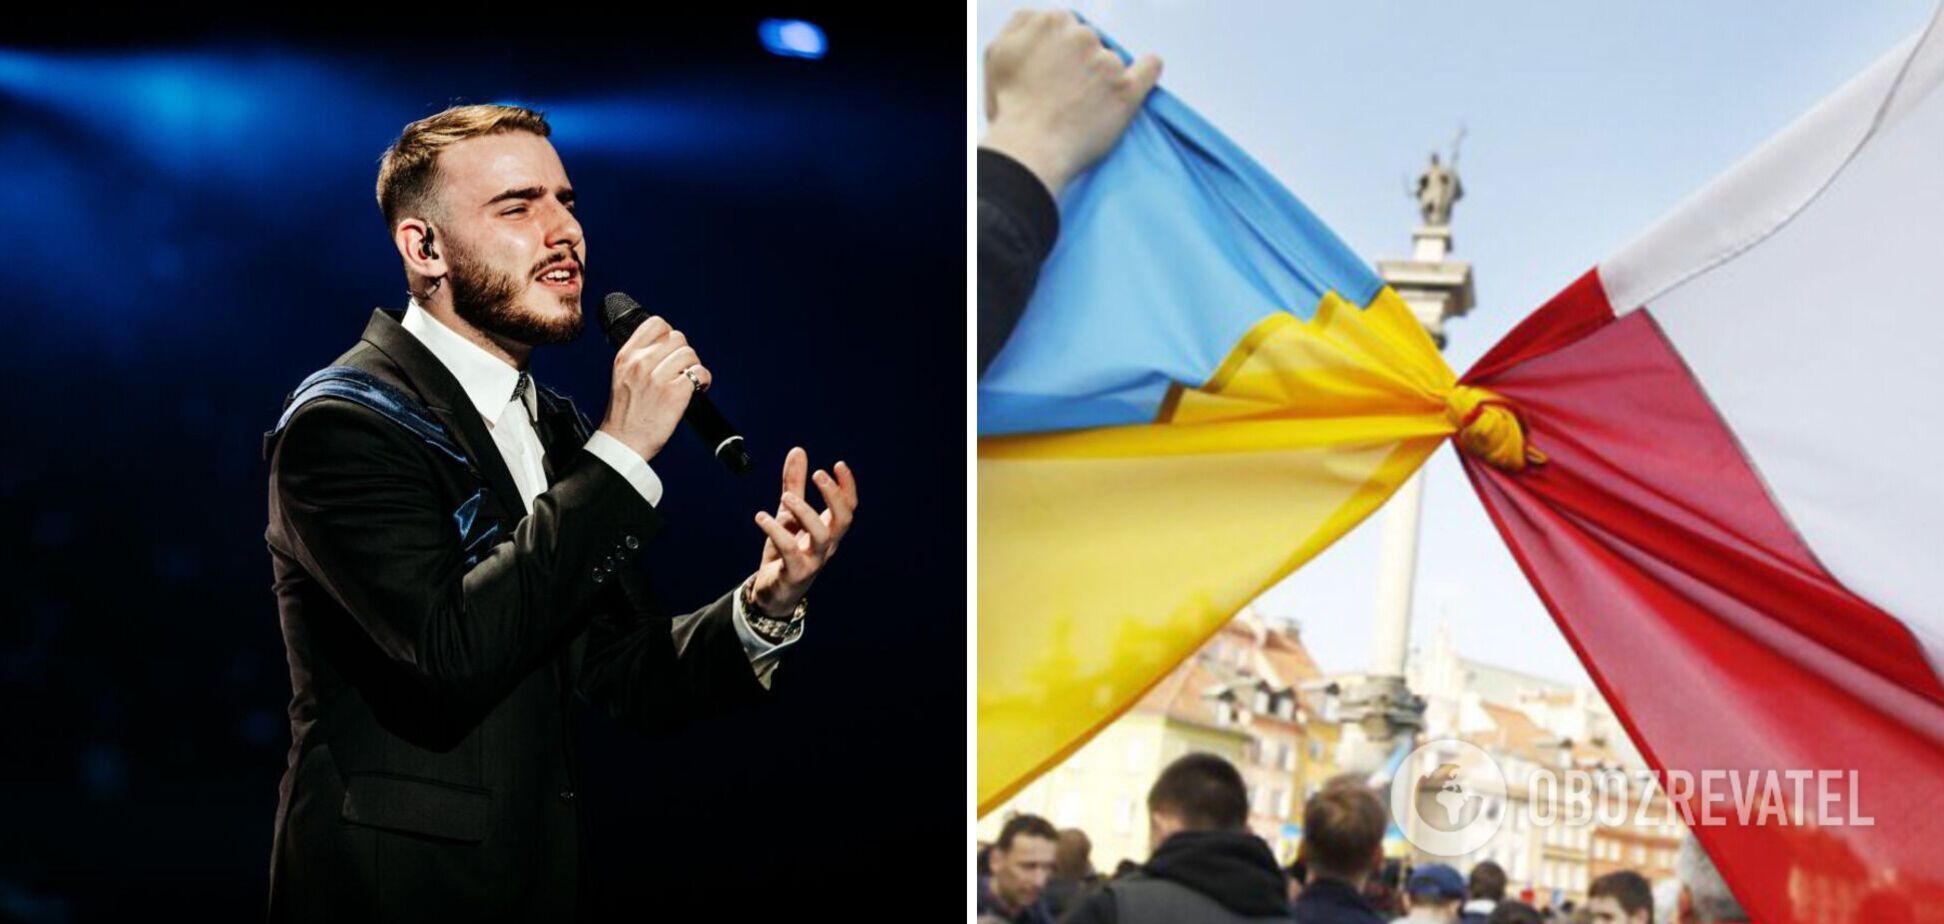 'Мне лично досадно': глава нацжюри от Украины на Евровидении прокомментировал скандал вокруг 0 баллов для Польши